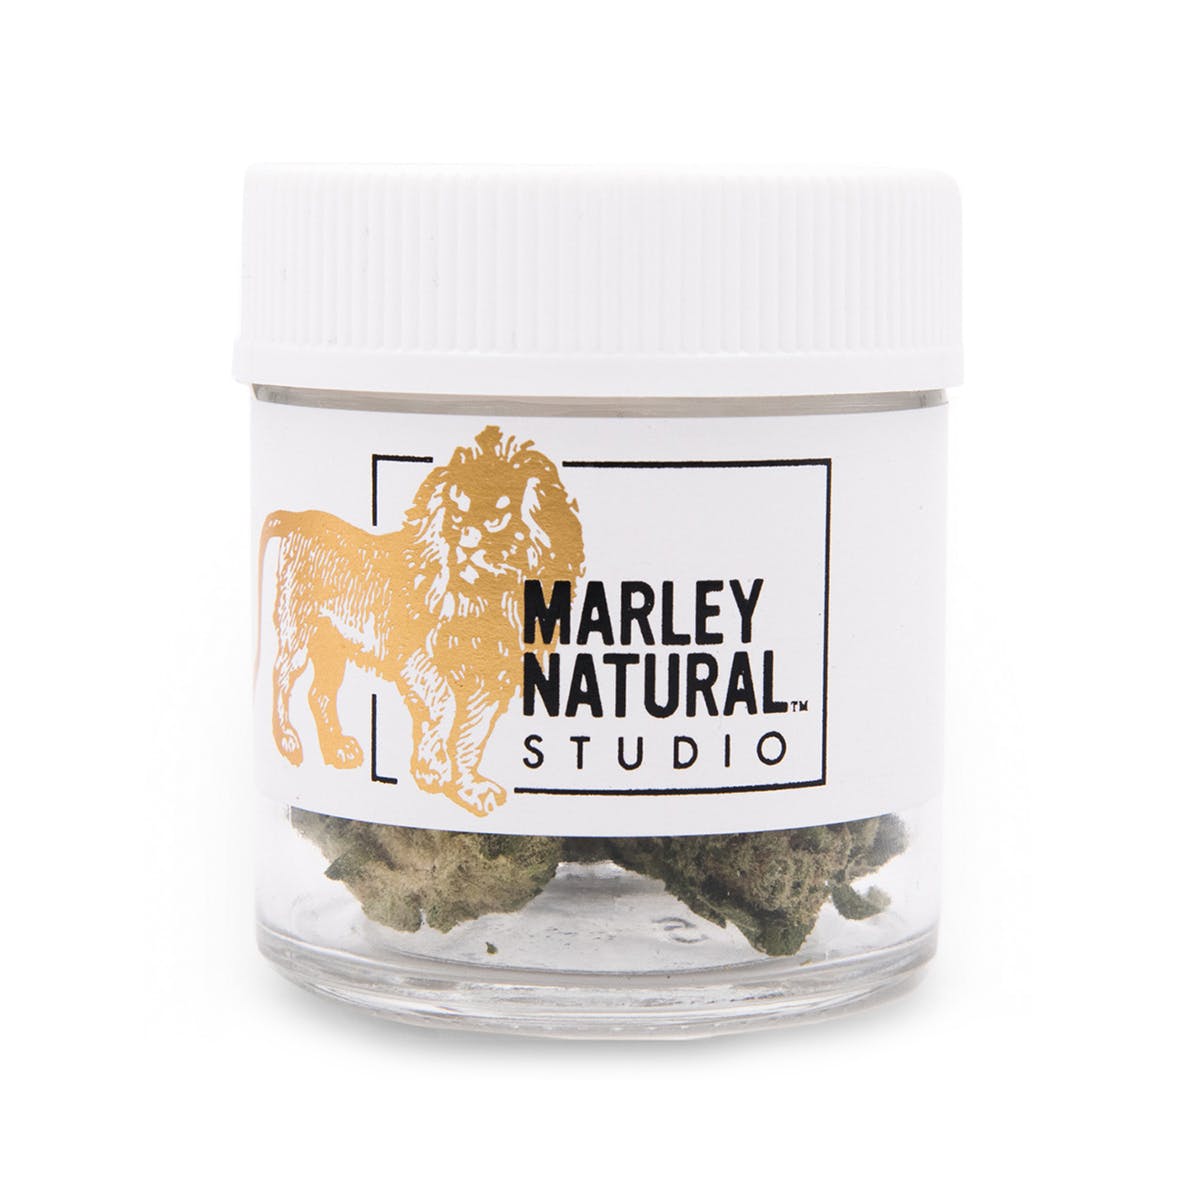 Marley Natural™ Studio - Jack Herer